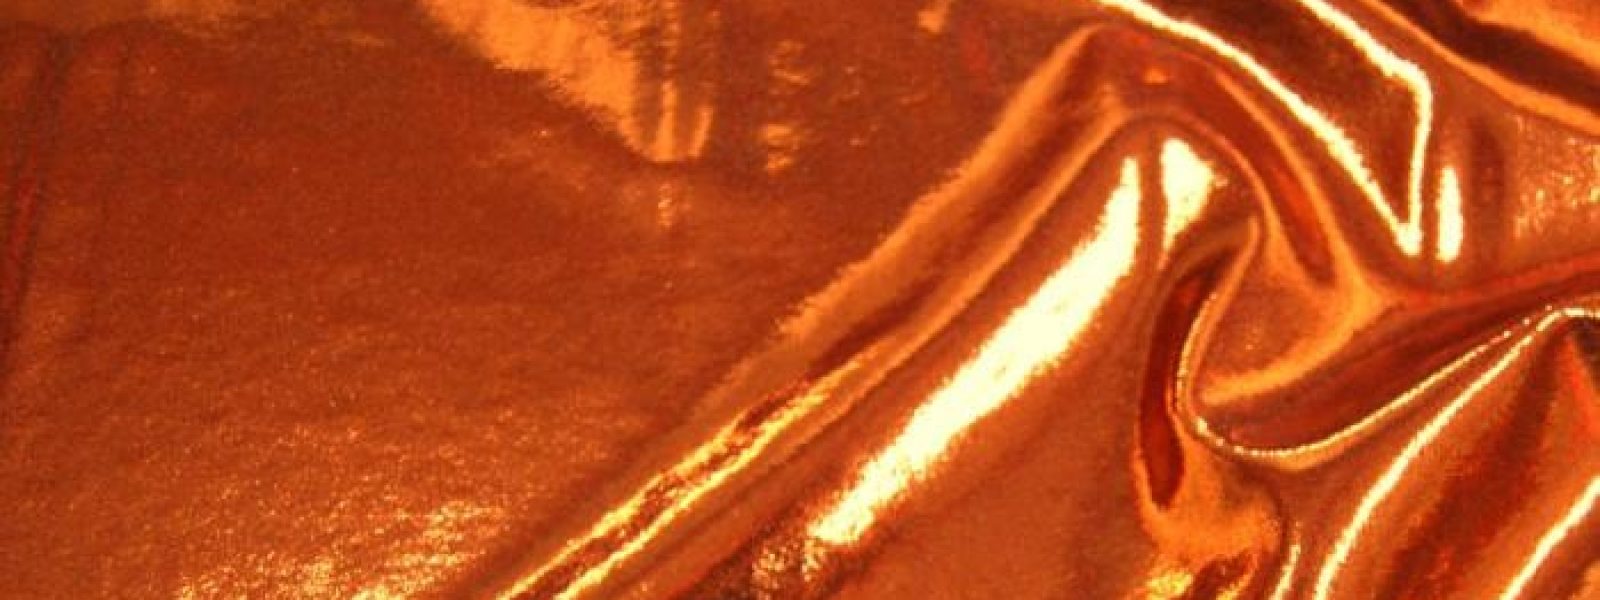 輝く地平線: 国際黄銅・銅市場の輝きを照らす, مجله ی آنلاین صنایع فلزی، فلزات و آلیاژ ایران